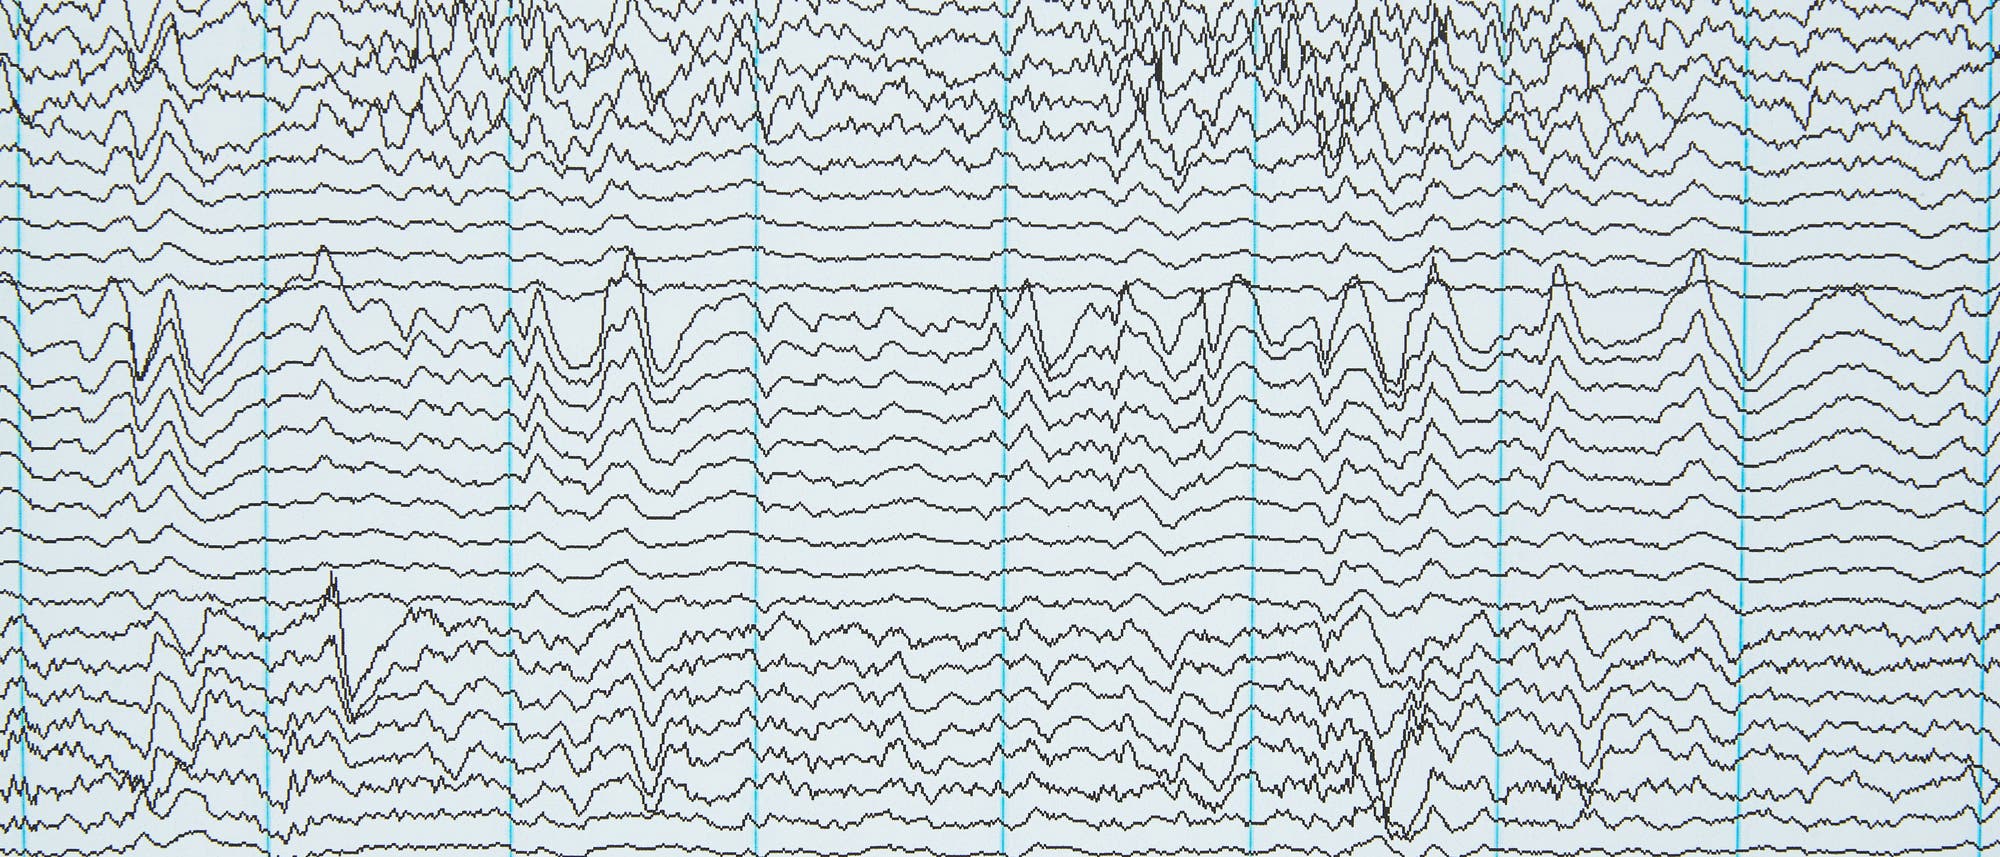 EEG-Wellen auf Papier